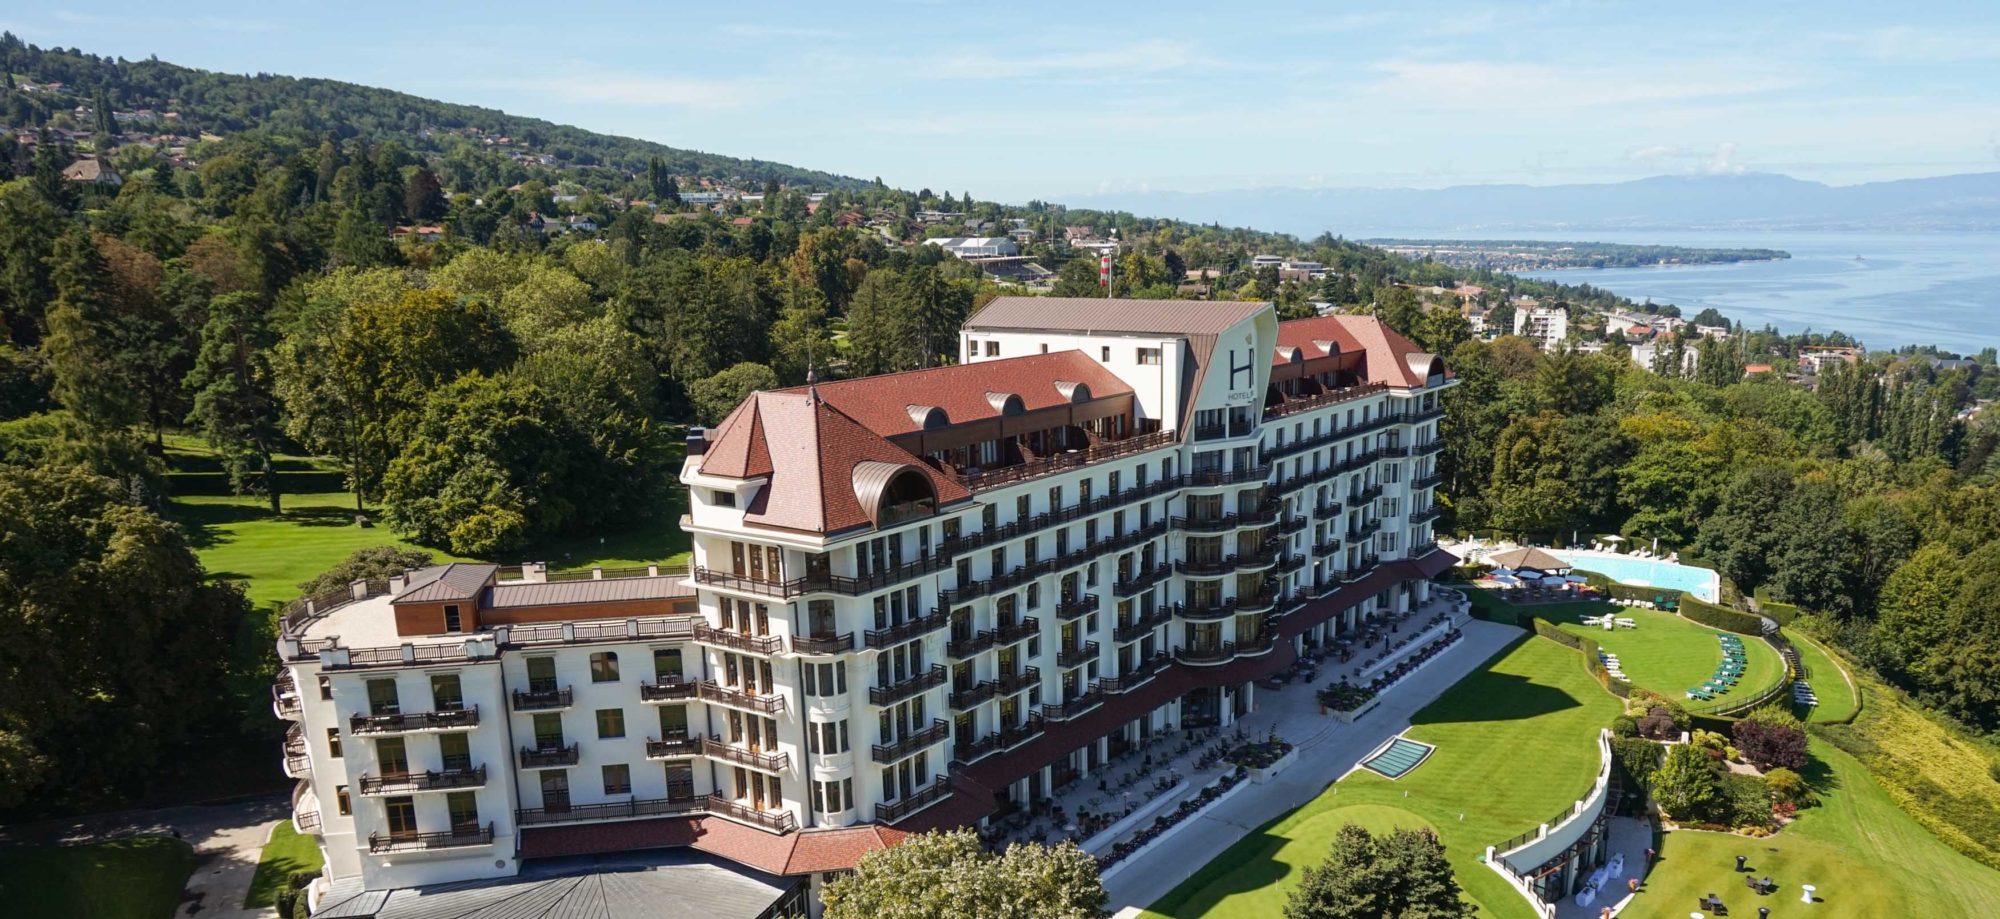 Bowo • Hotel luxe 5 etoiles palace vue de haut